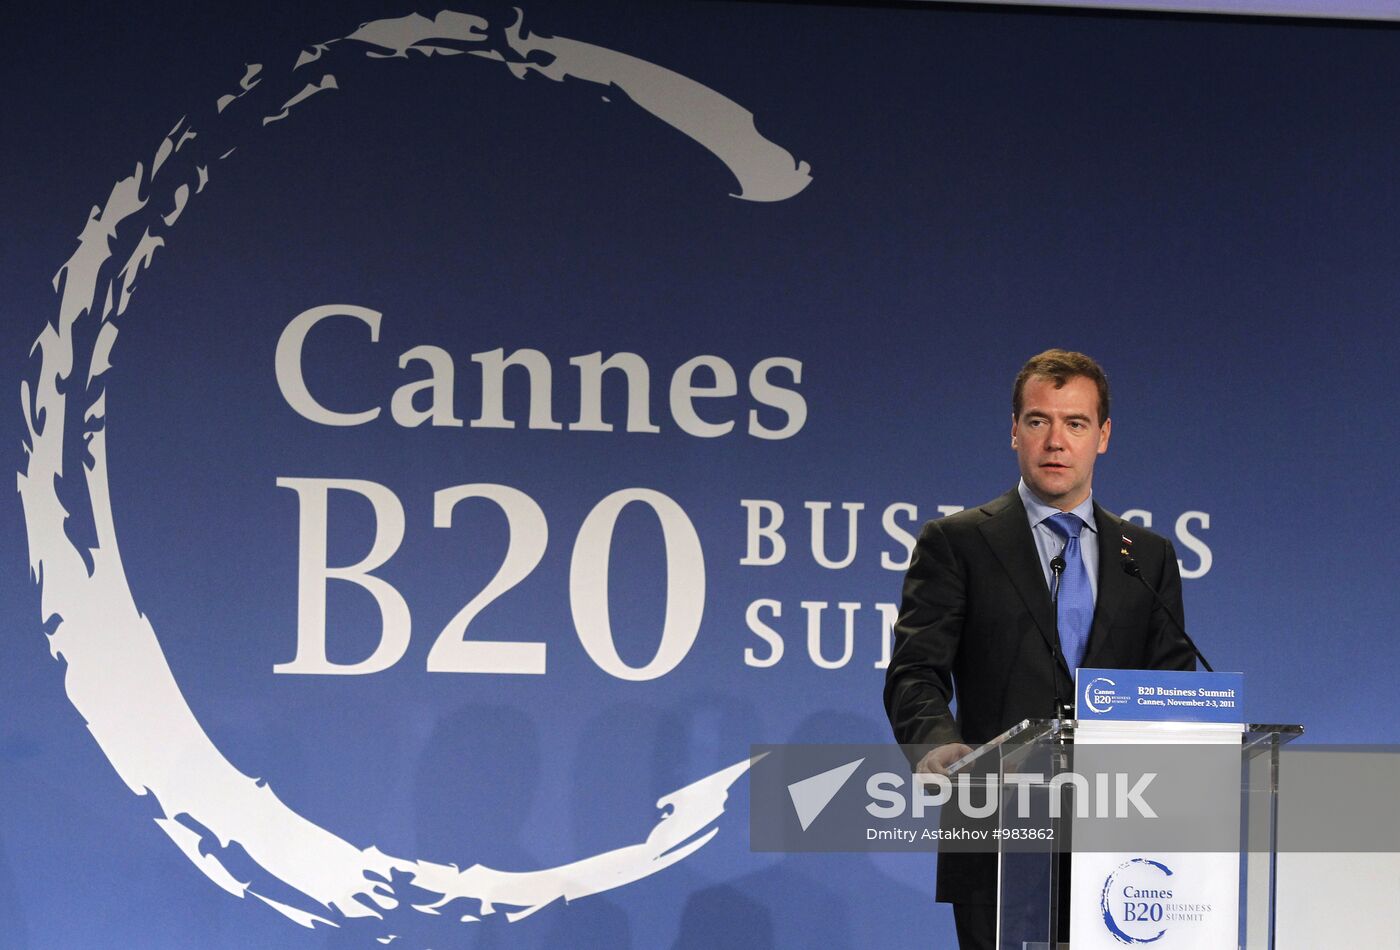 Dmitry Medvedev at G20 summit